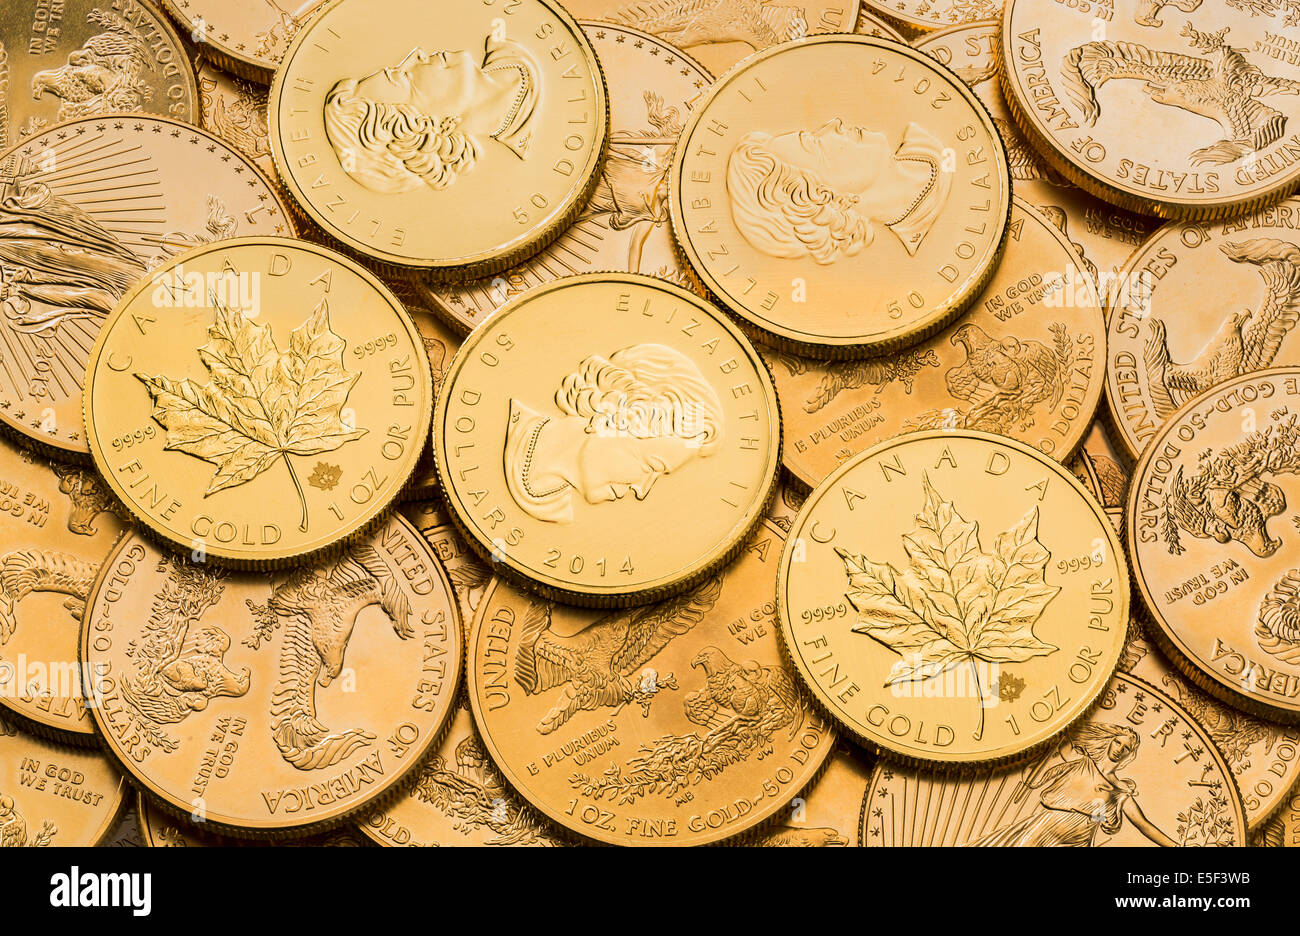 Une once troy d'aigle d'or pièces d'or du trésor américain et de menthe Feuille d'érable en or des pièces de monnaie canadienne Banque D'Images